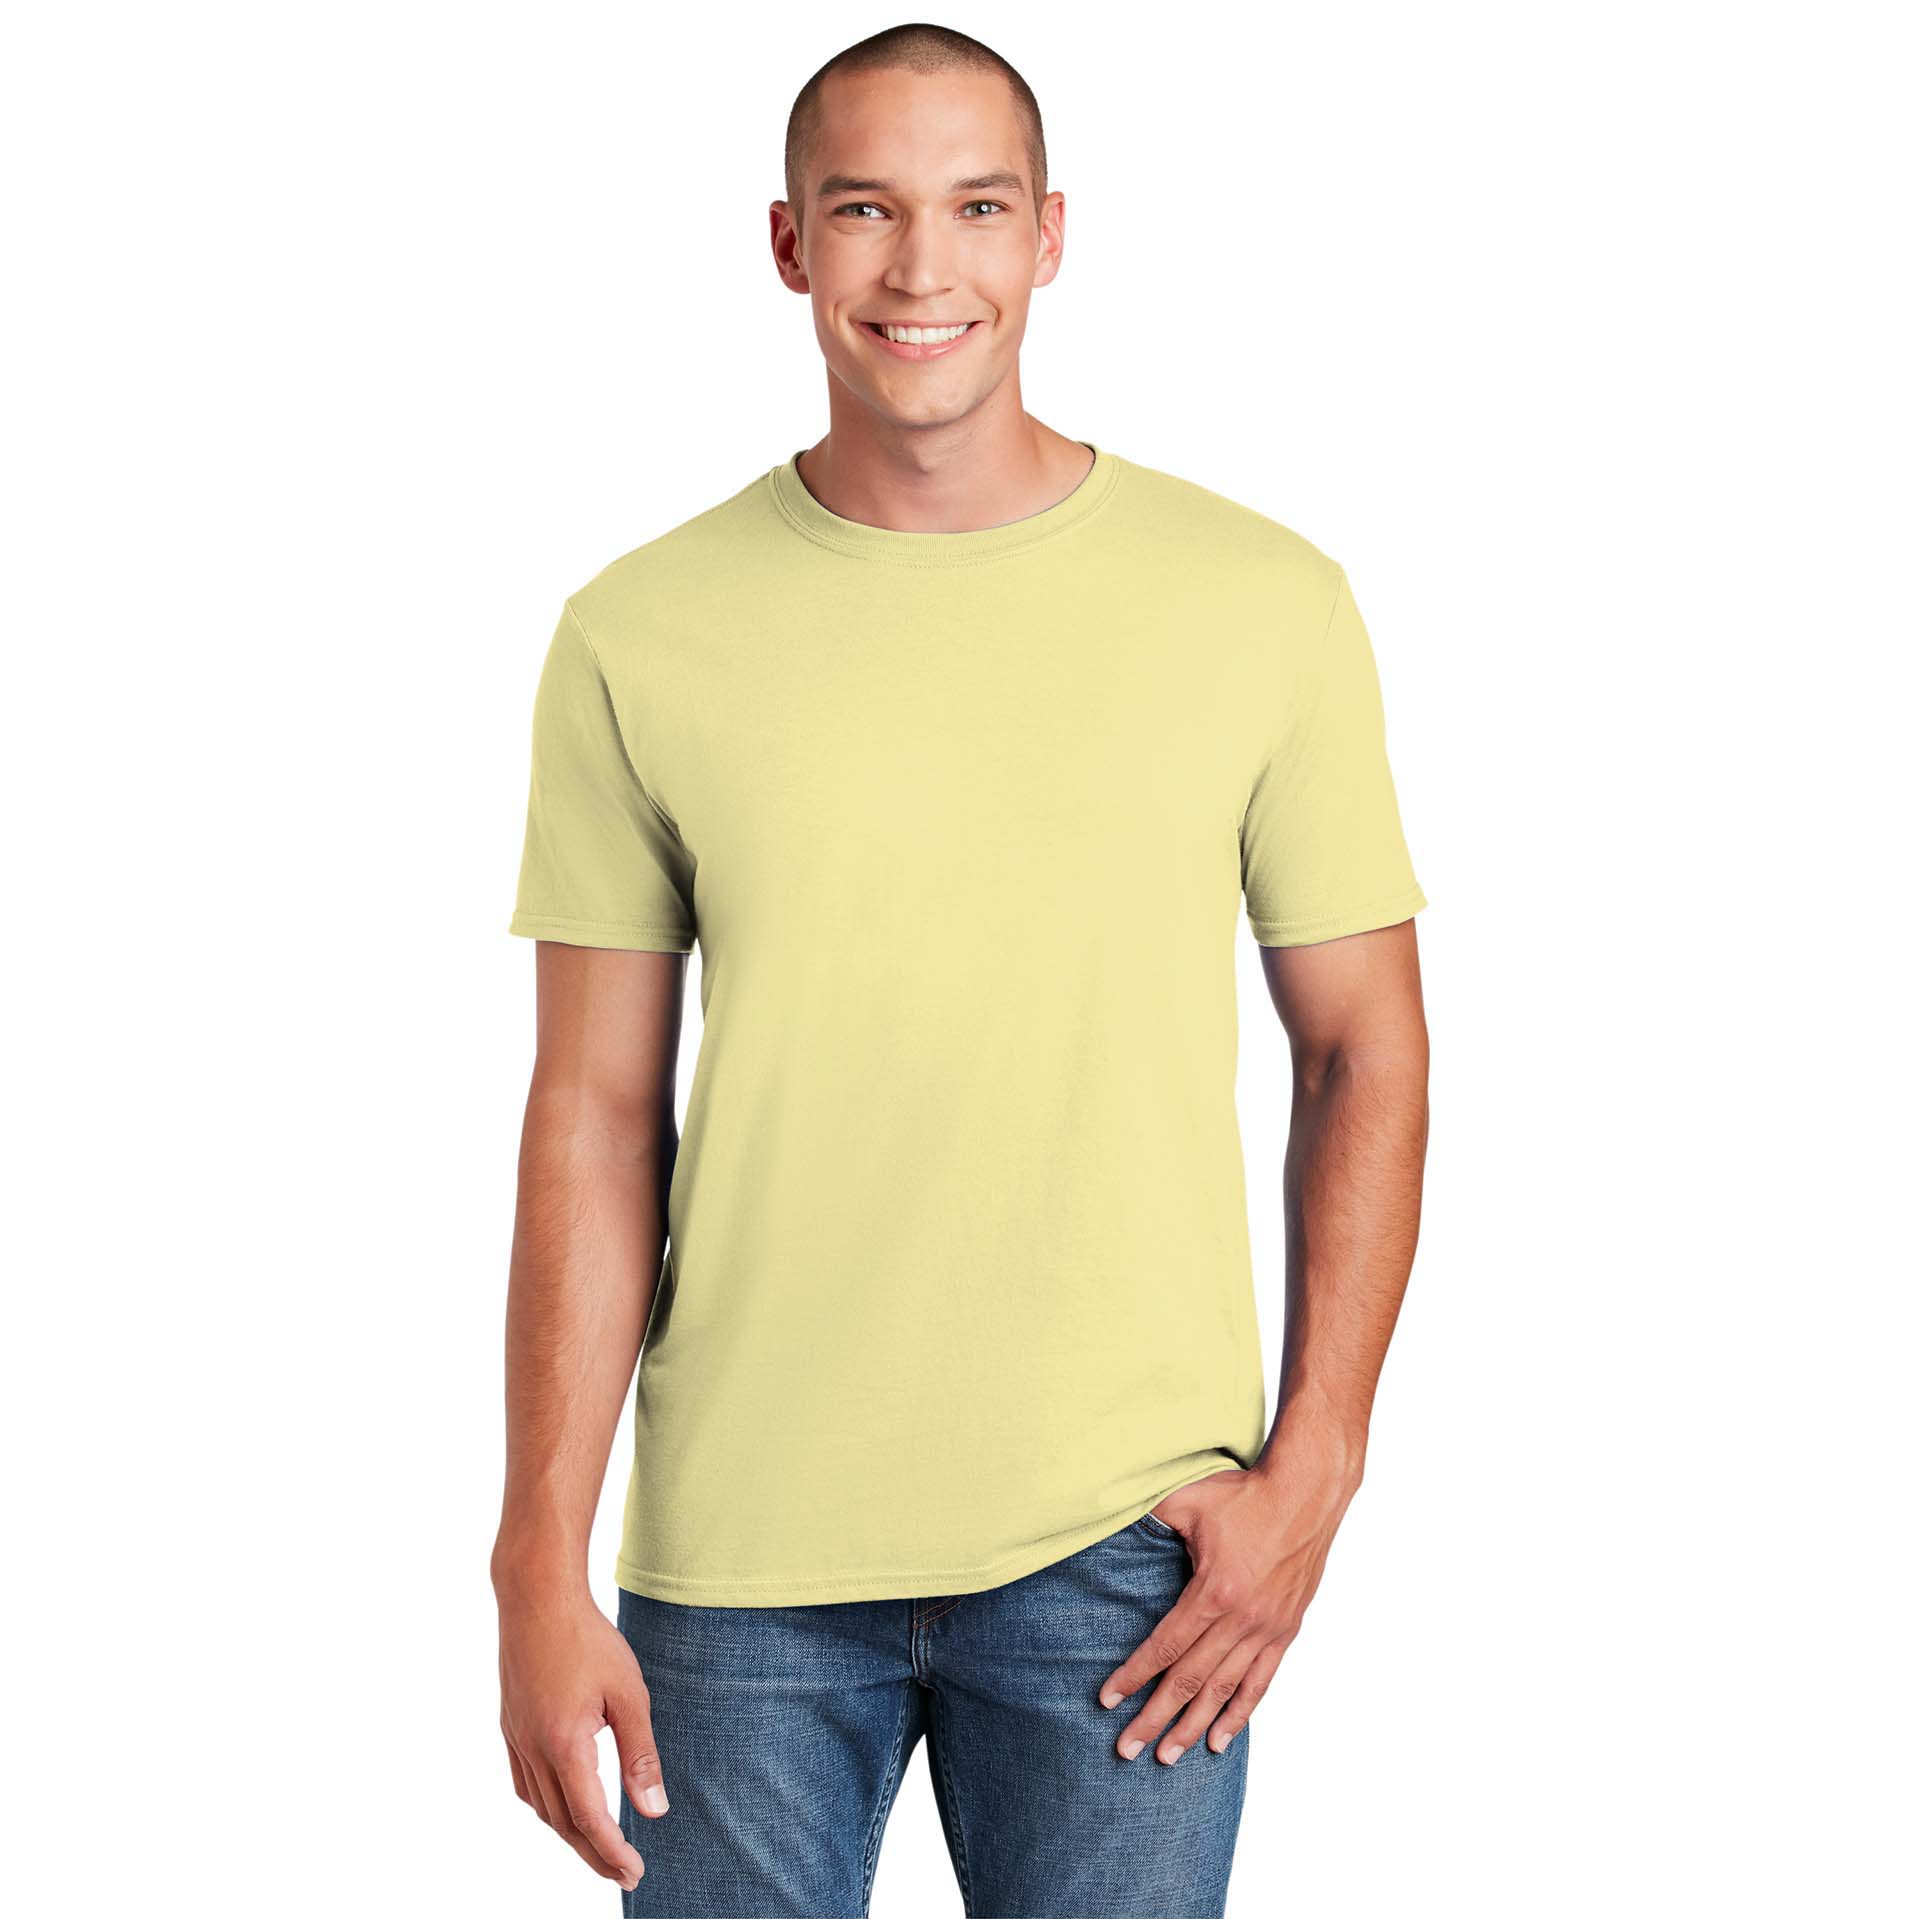 Corn Silk 64000 Gildan Softstyle T-Shirt 